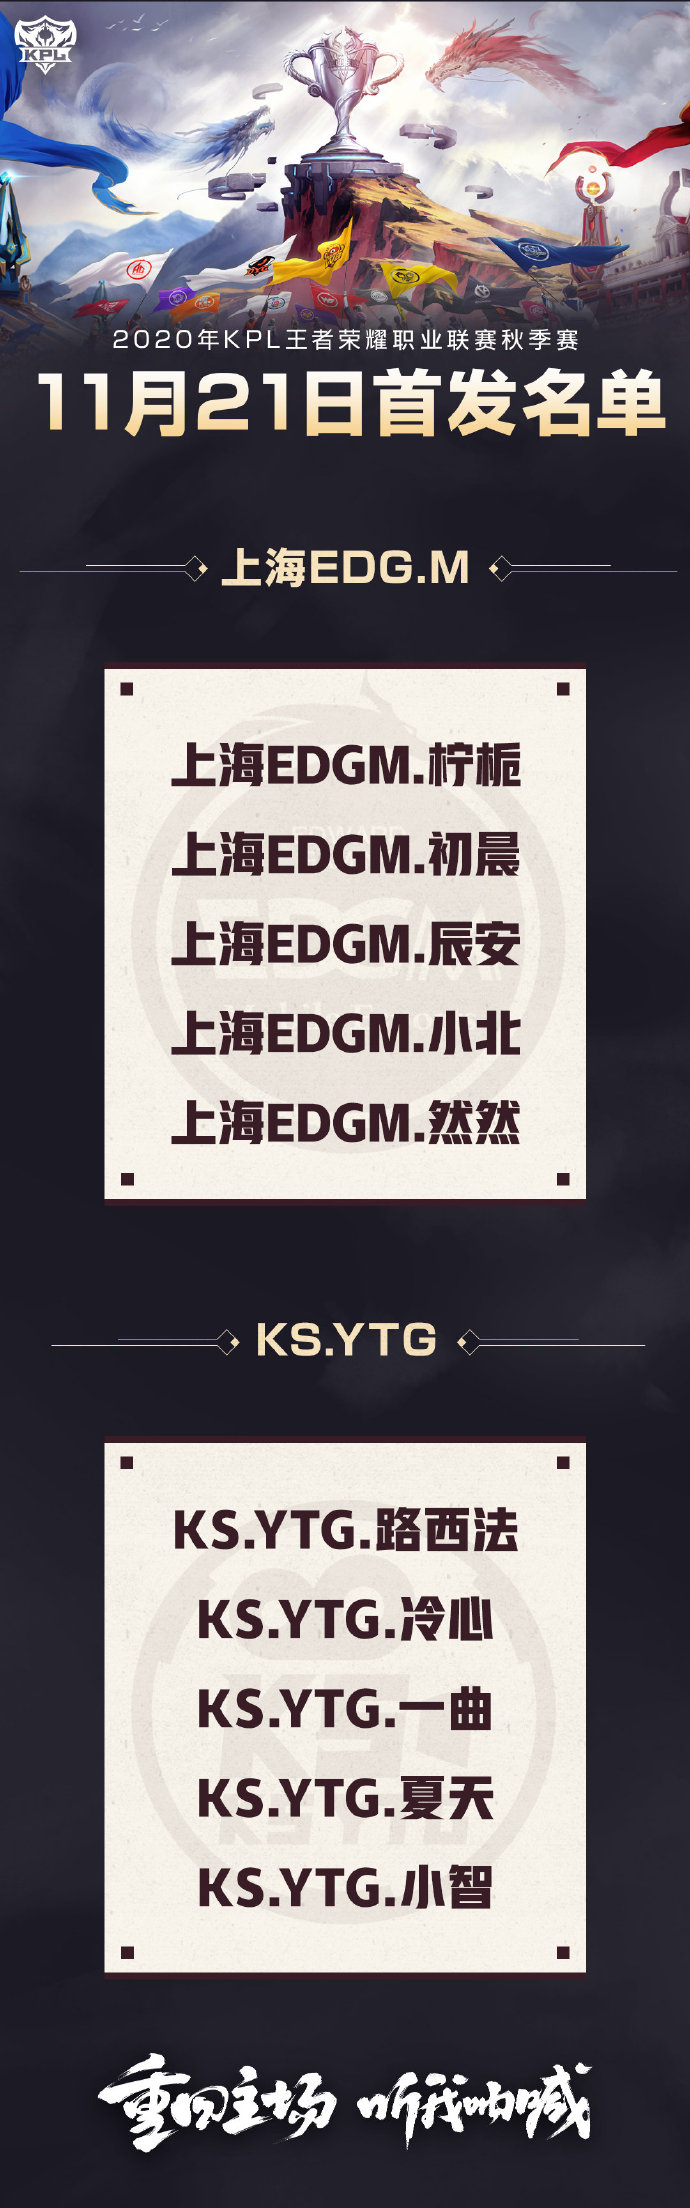 [今日首发] 上海EDG.M与KS.YTG谁能拿下胜利 不留遗憾？